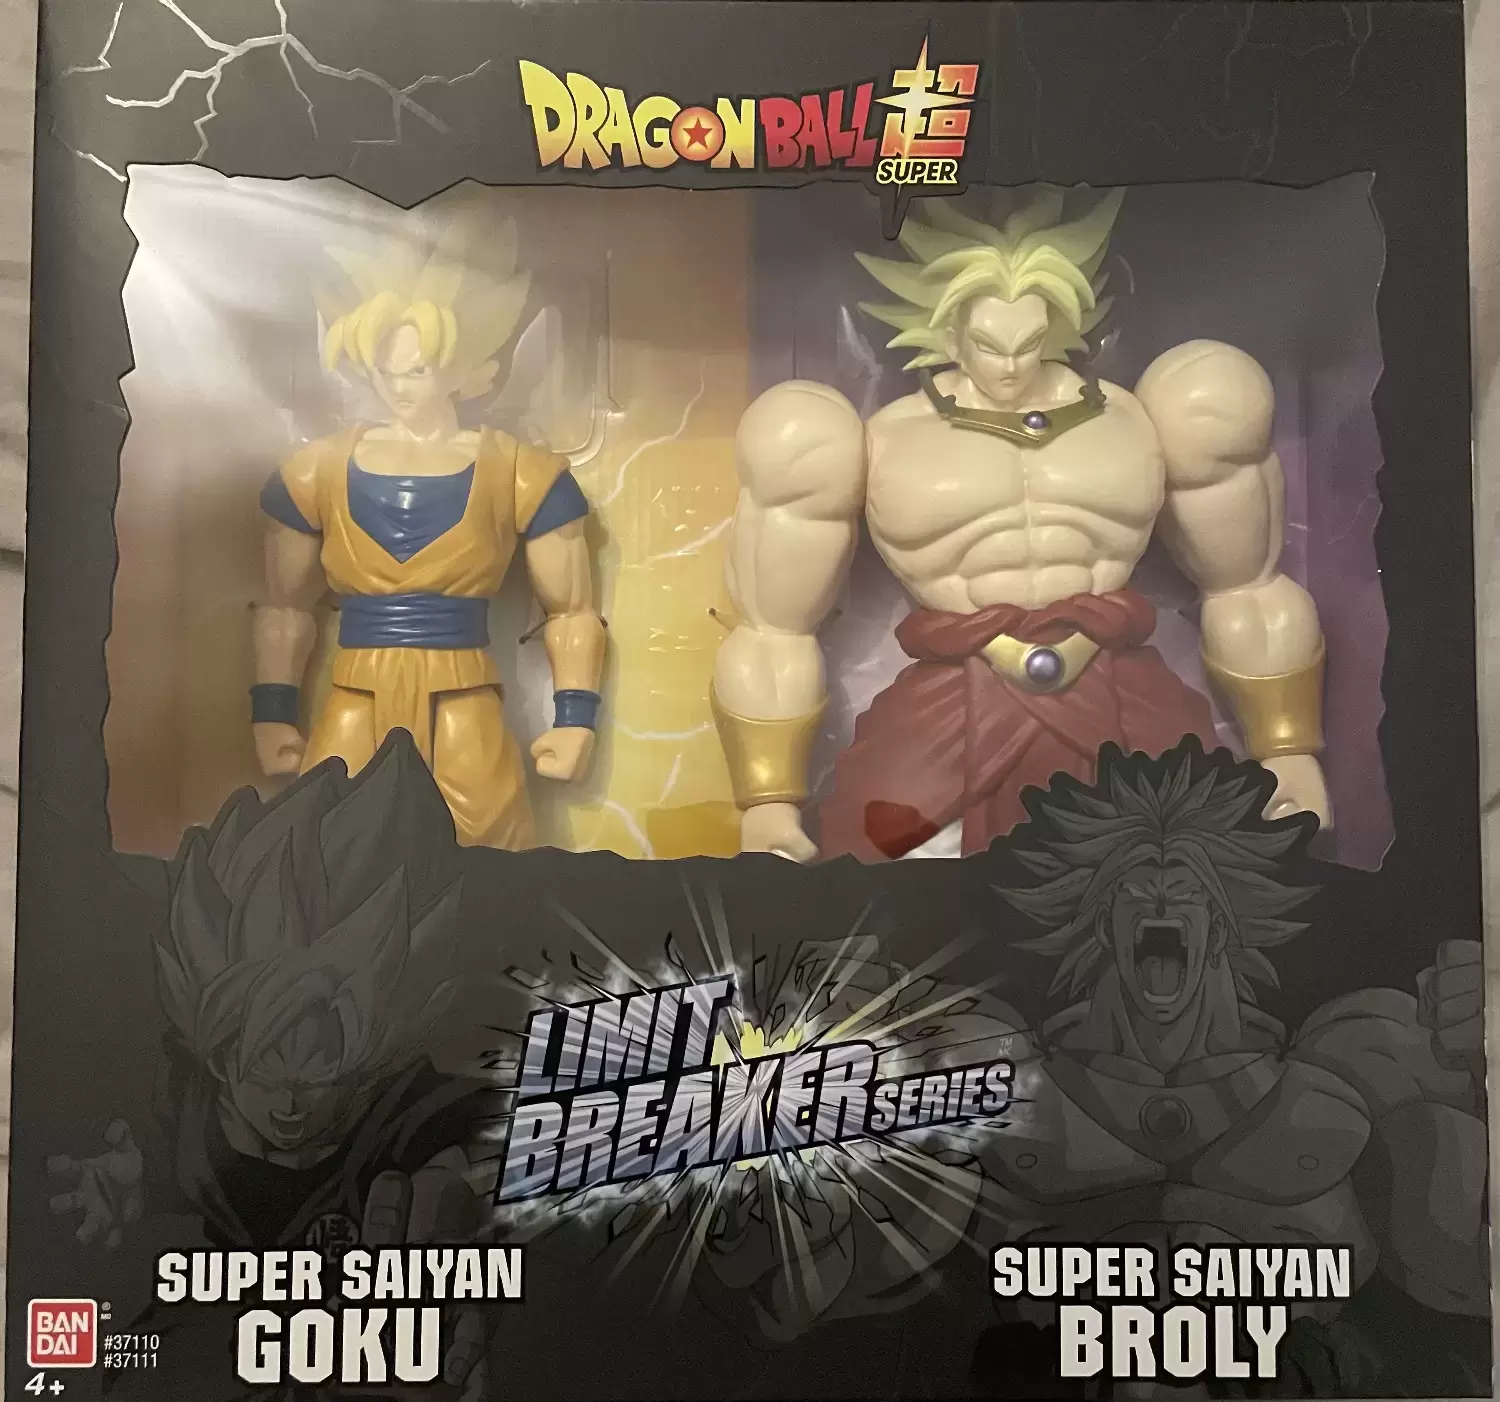 Bandai - Limit Breaker Series - Super Saiyan Goku & Super Saiyan Broly